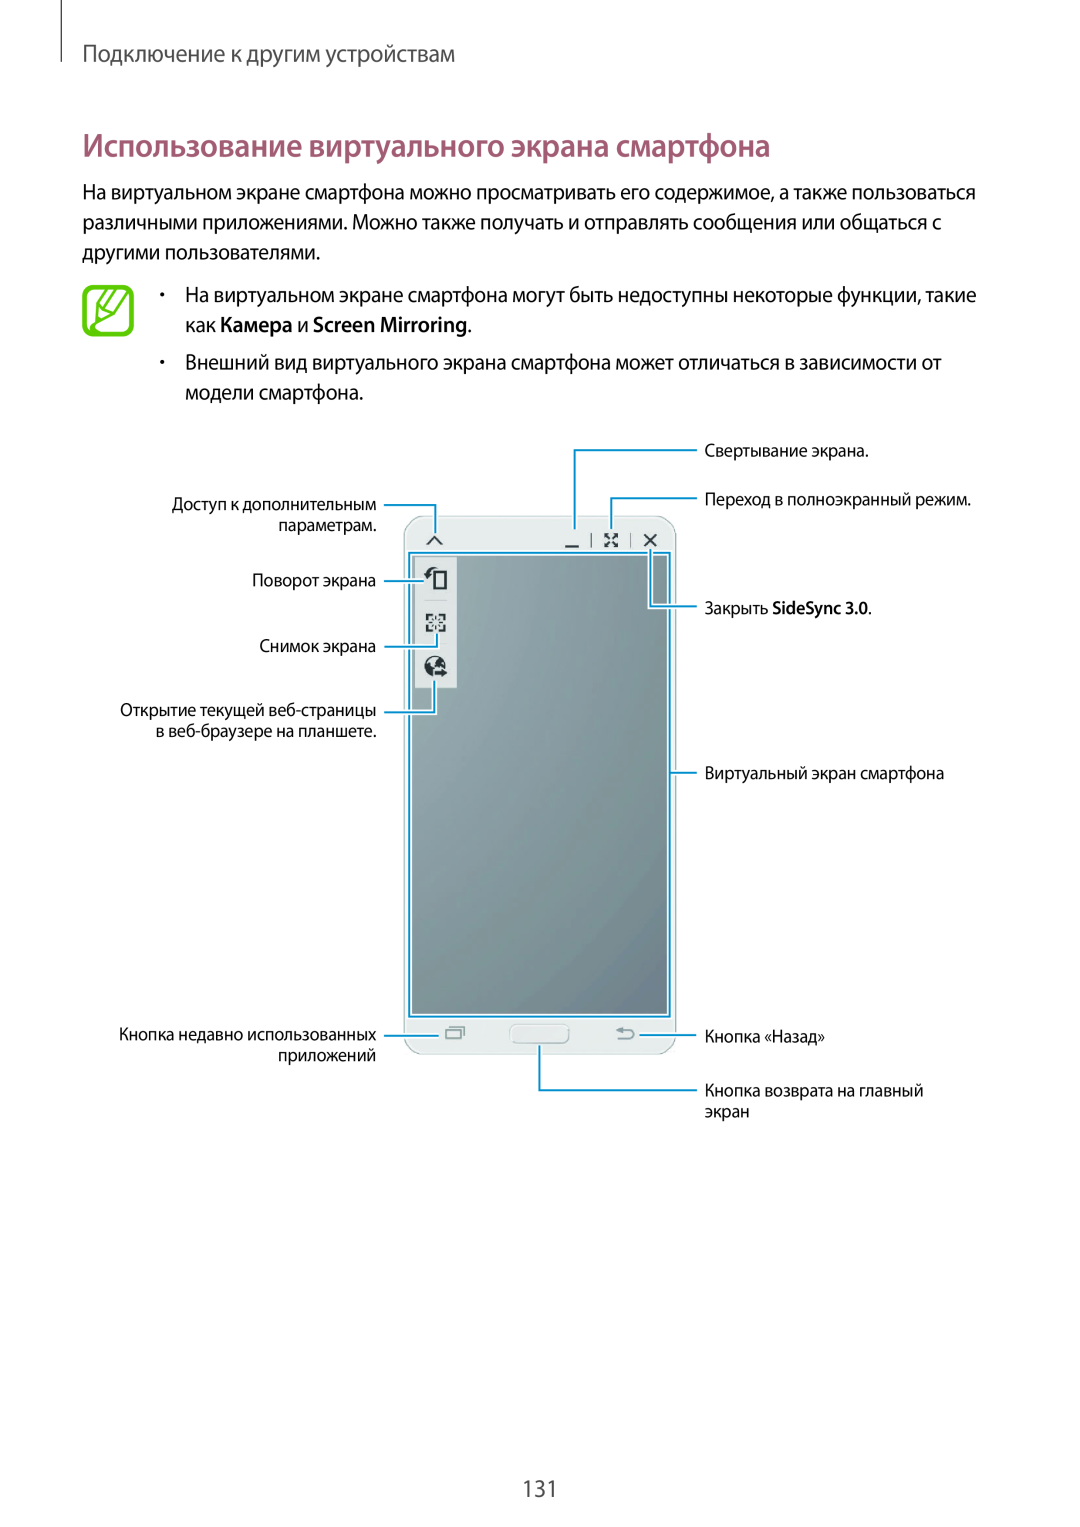 Samsung SM-T800NZWASER Использование виртуального экрана смартфона, Подключение к другим устройствам, Закрыть SideSync 